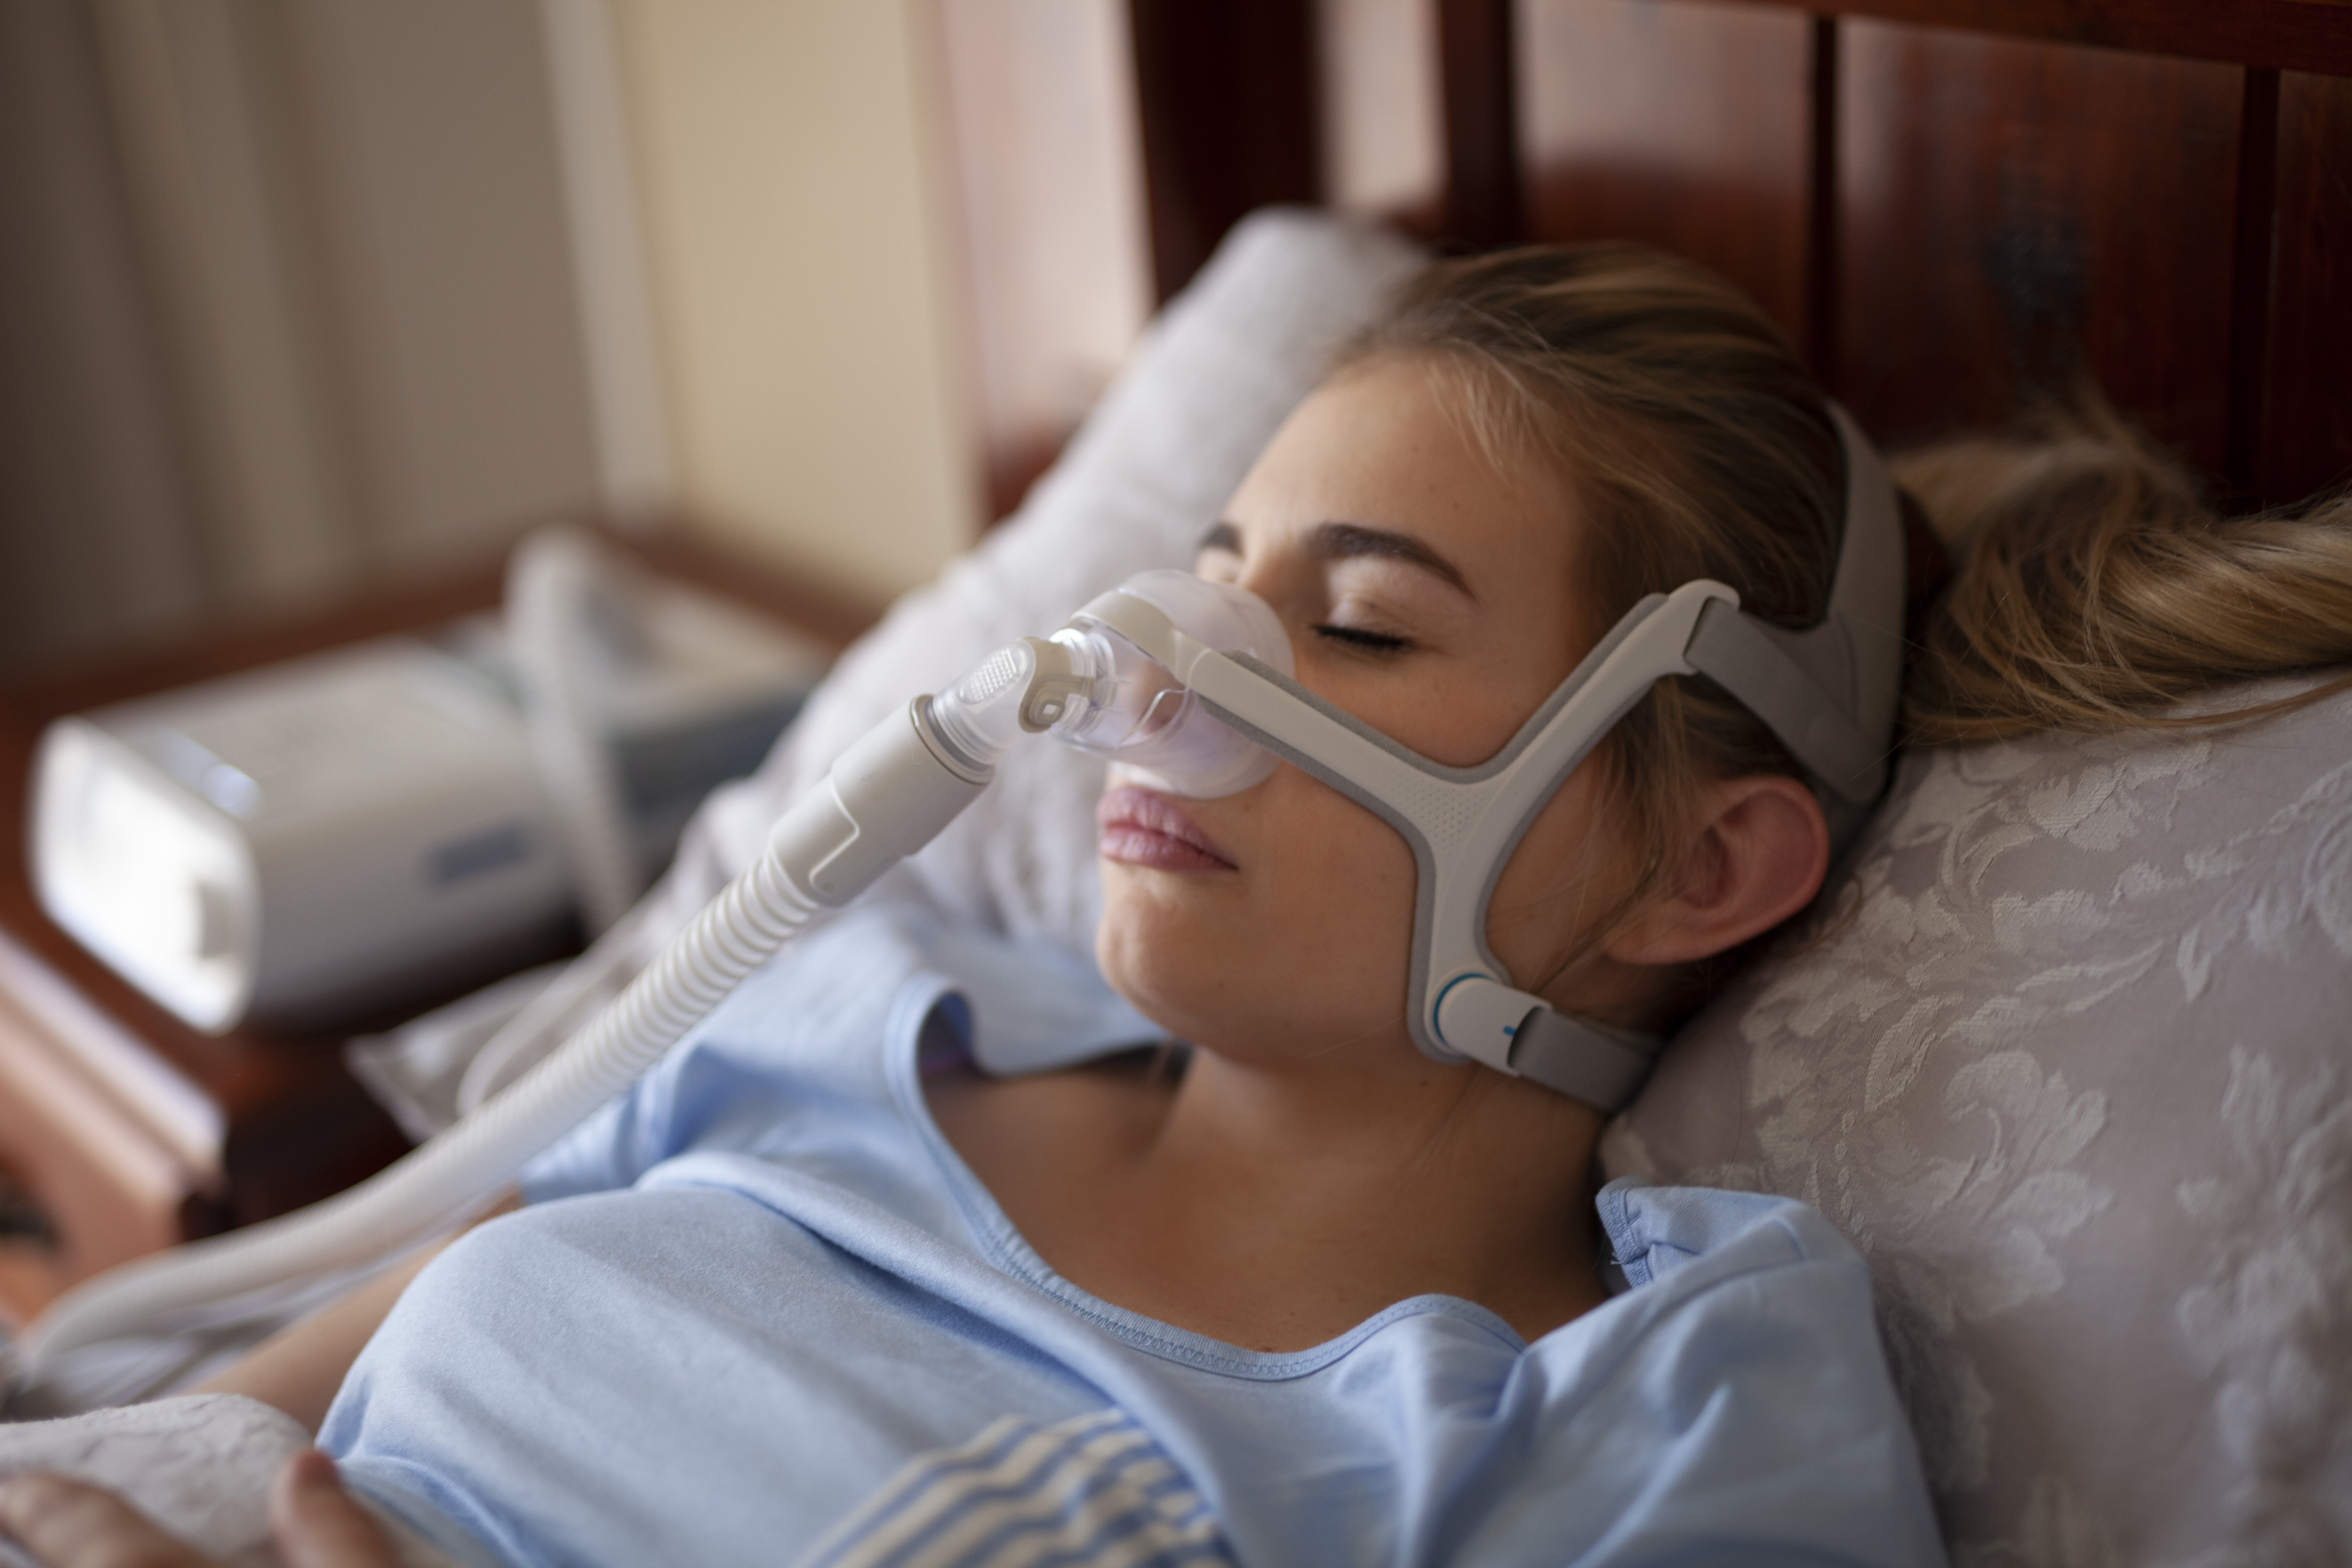 Patienten können mit einem CPAP-Gerät behandelt werden, das über einen Schlauch, der mit einer Maske oder einem Nasenstück verbunden ist, einen konstanten und gleichmäßigen Luftdruck liefert, der Ihnen beim Atmen im Schlaf hilft